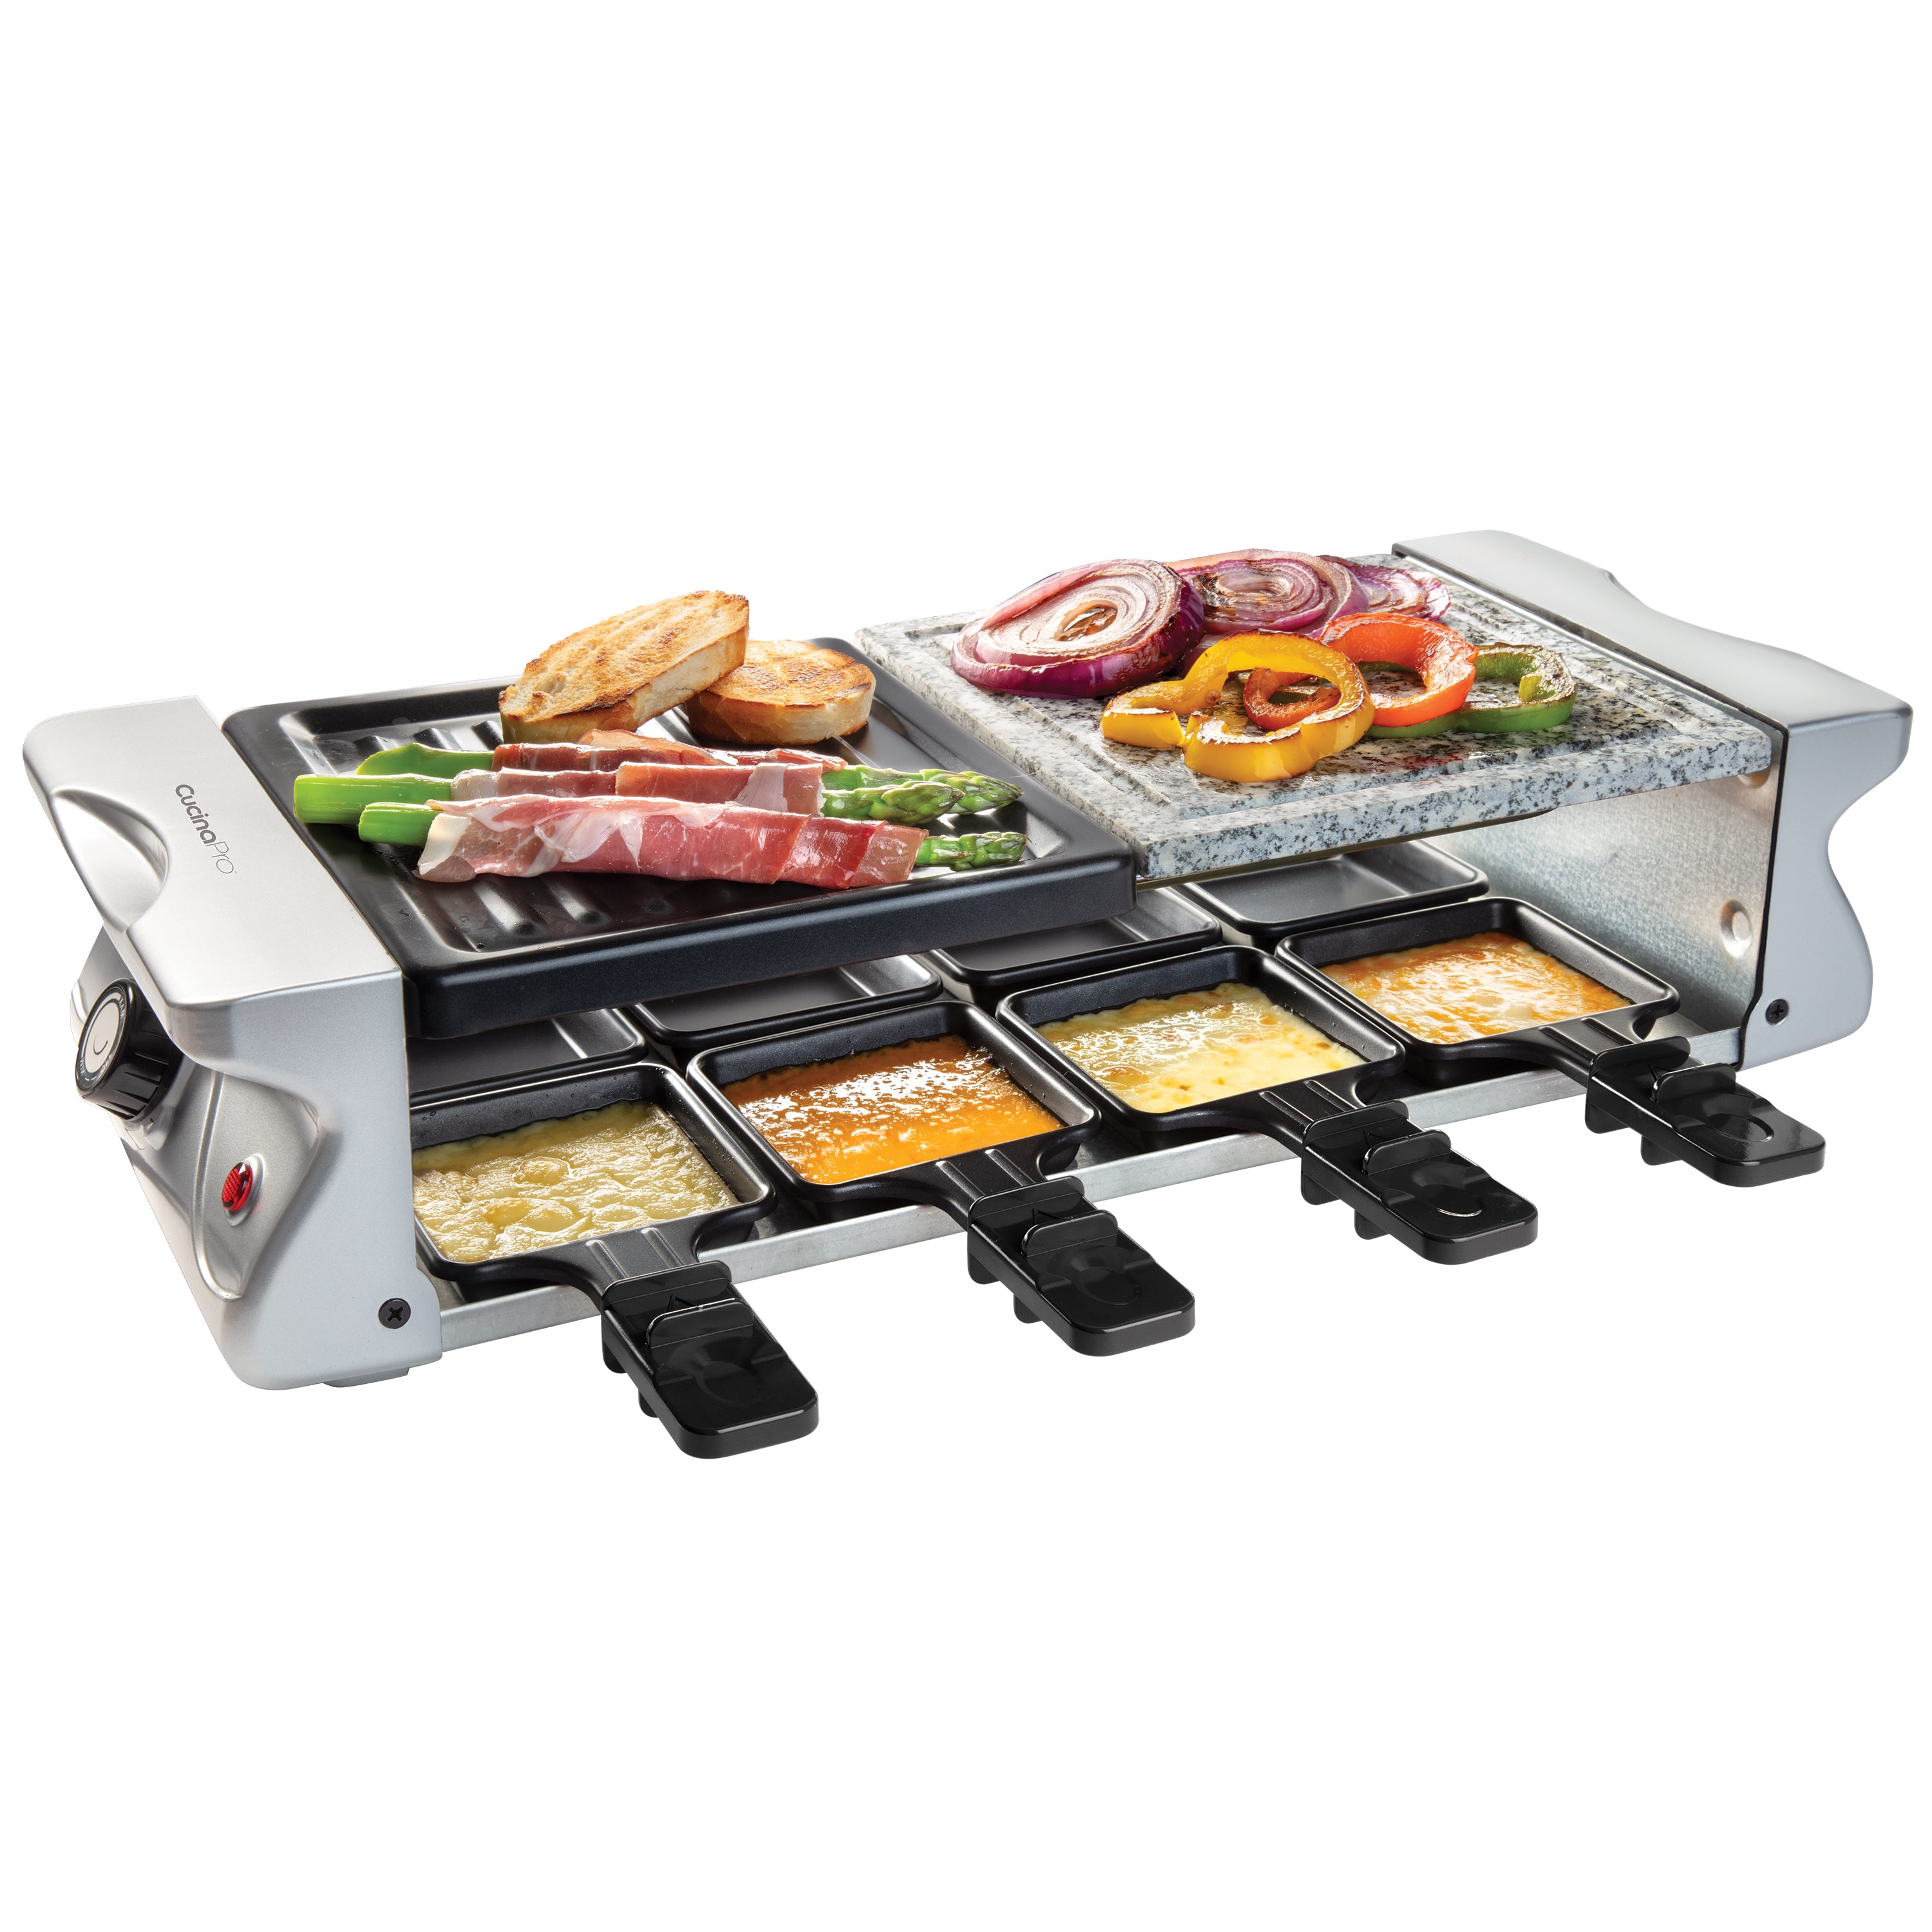 cucina conviviale > raclette, fonduta e grill > apparecchio per raclette 4  in 1 - 8 persone : Koenig - IT